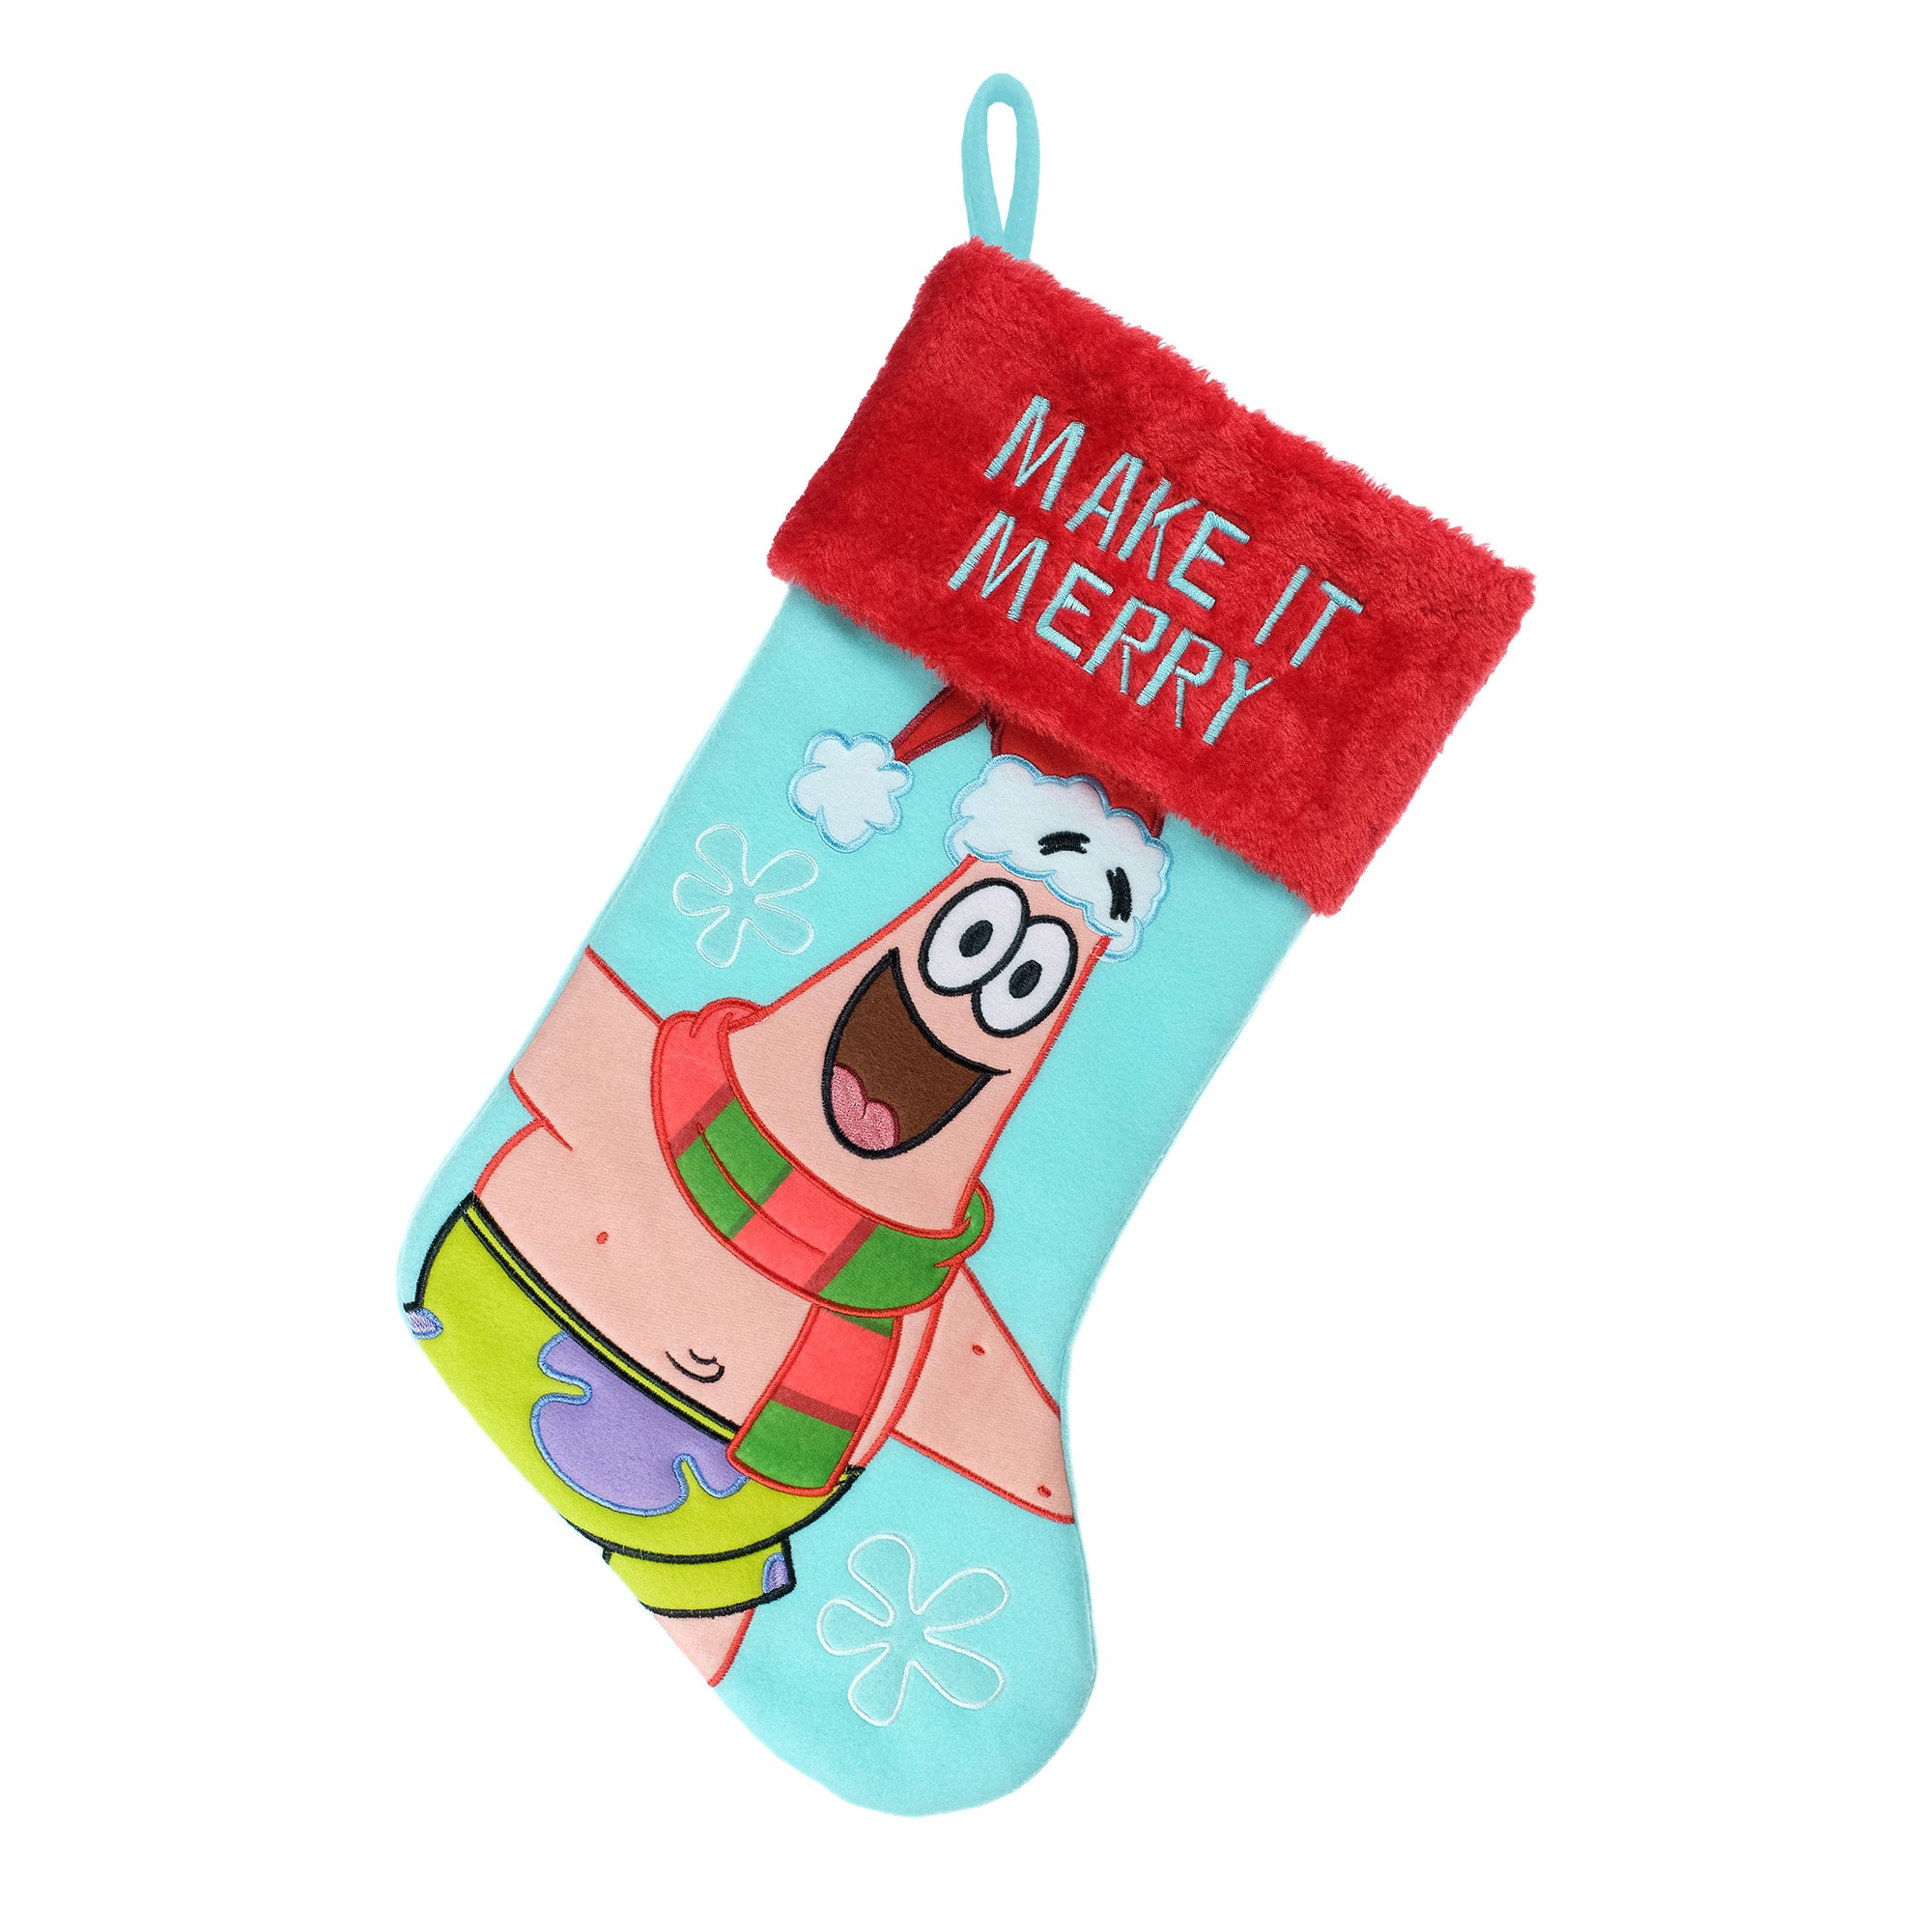 Spongebob Squarepants Christmas List Stocking